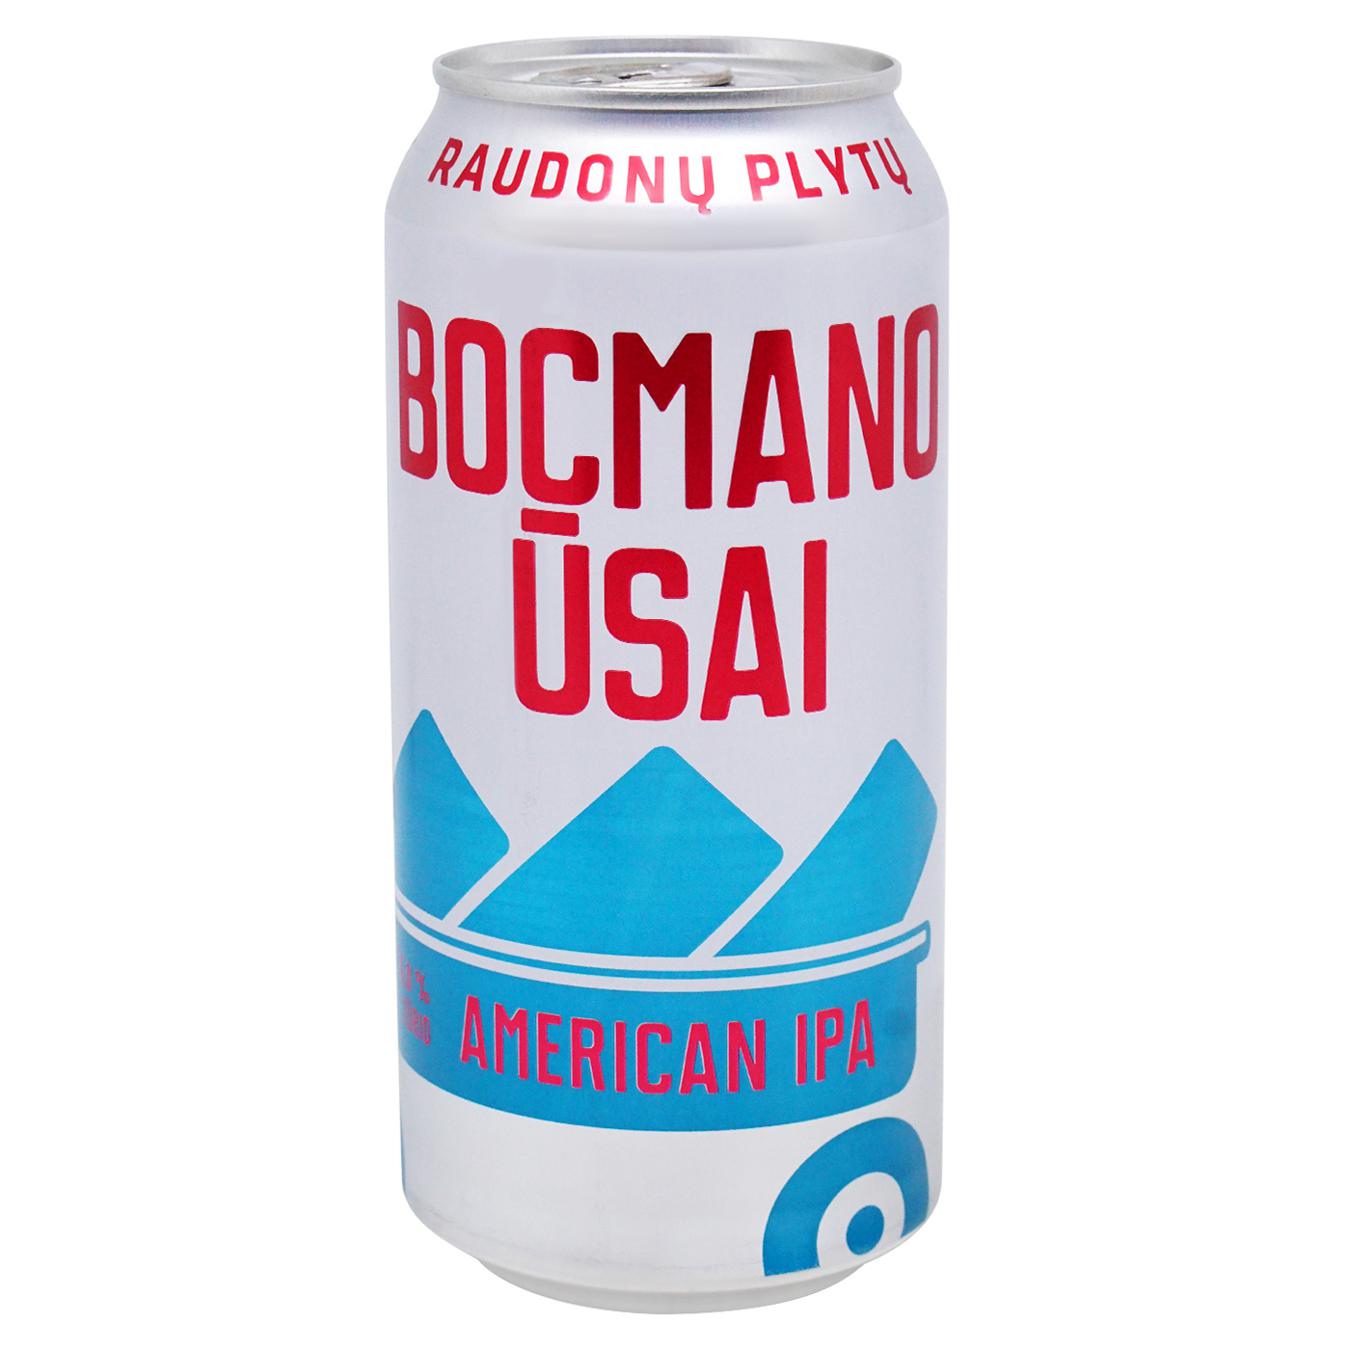 Light beer Raudonos plytos Bocmano ūsai 6% 0.44 l iron can